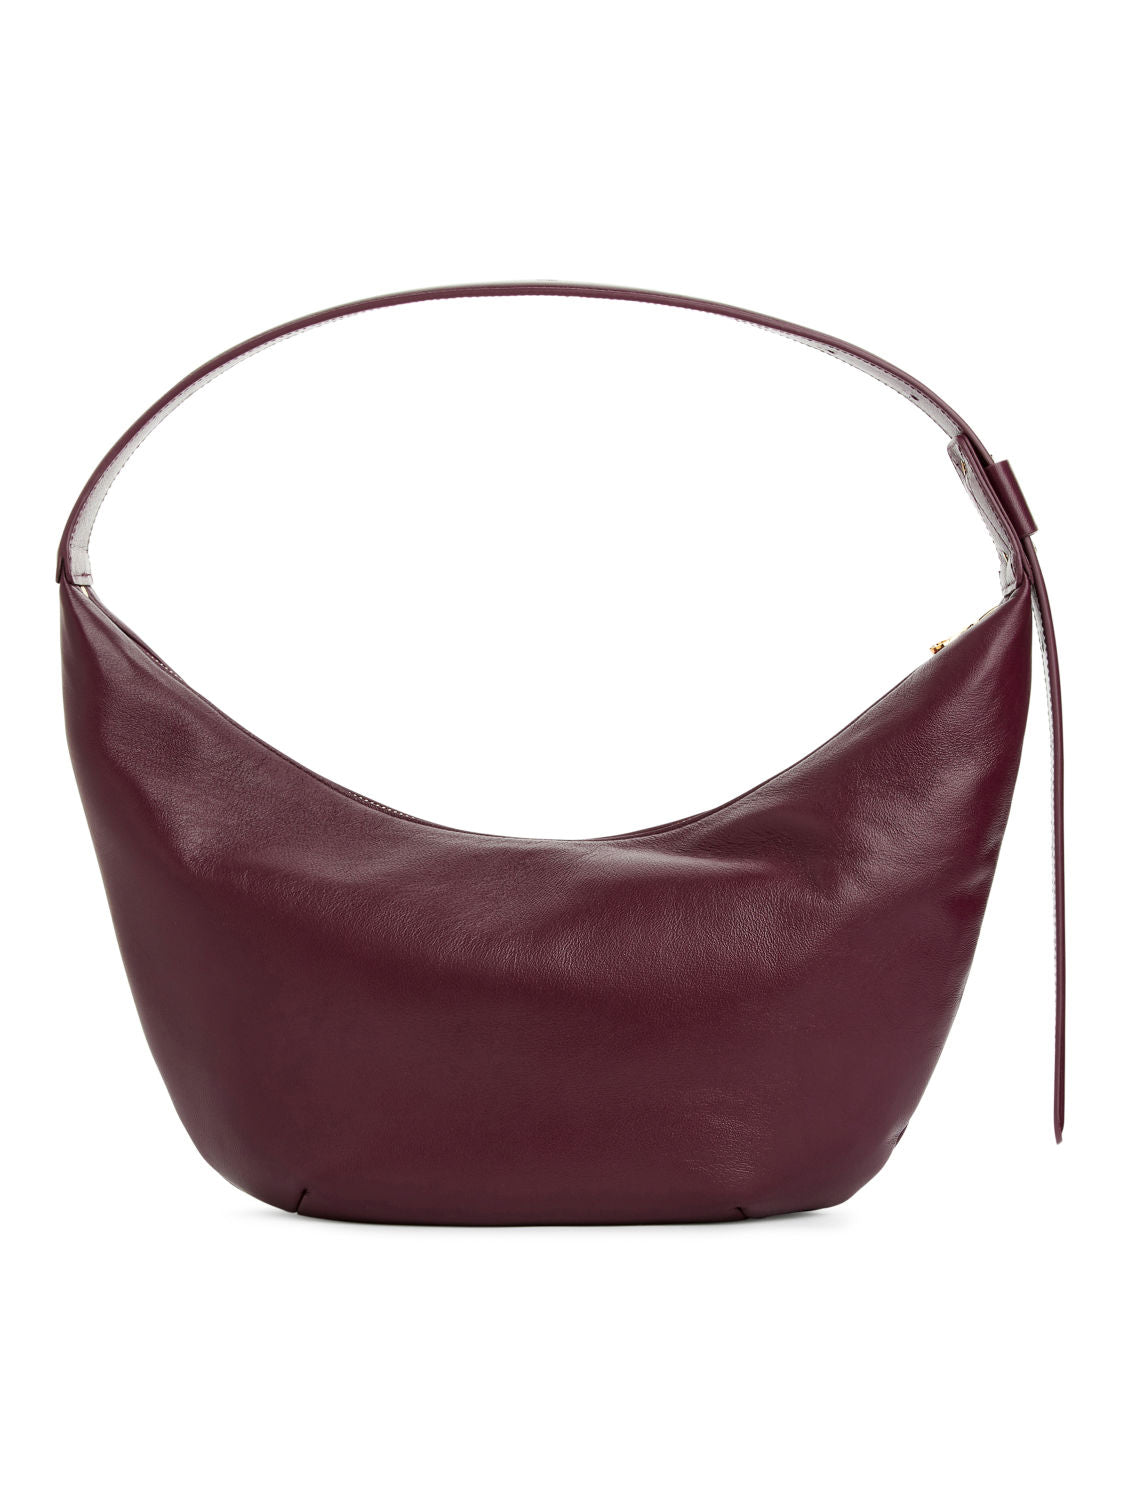 Mid size curved shoulder bag